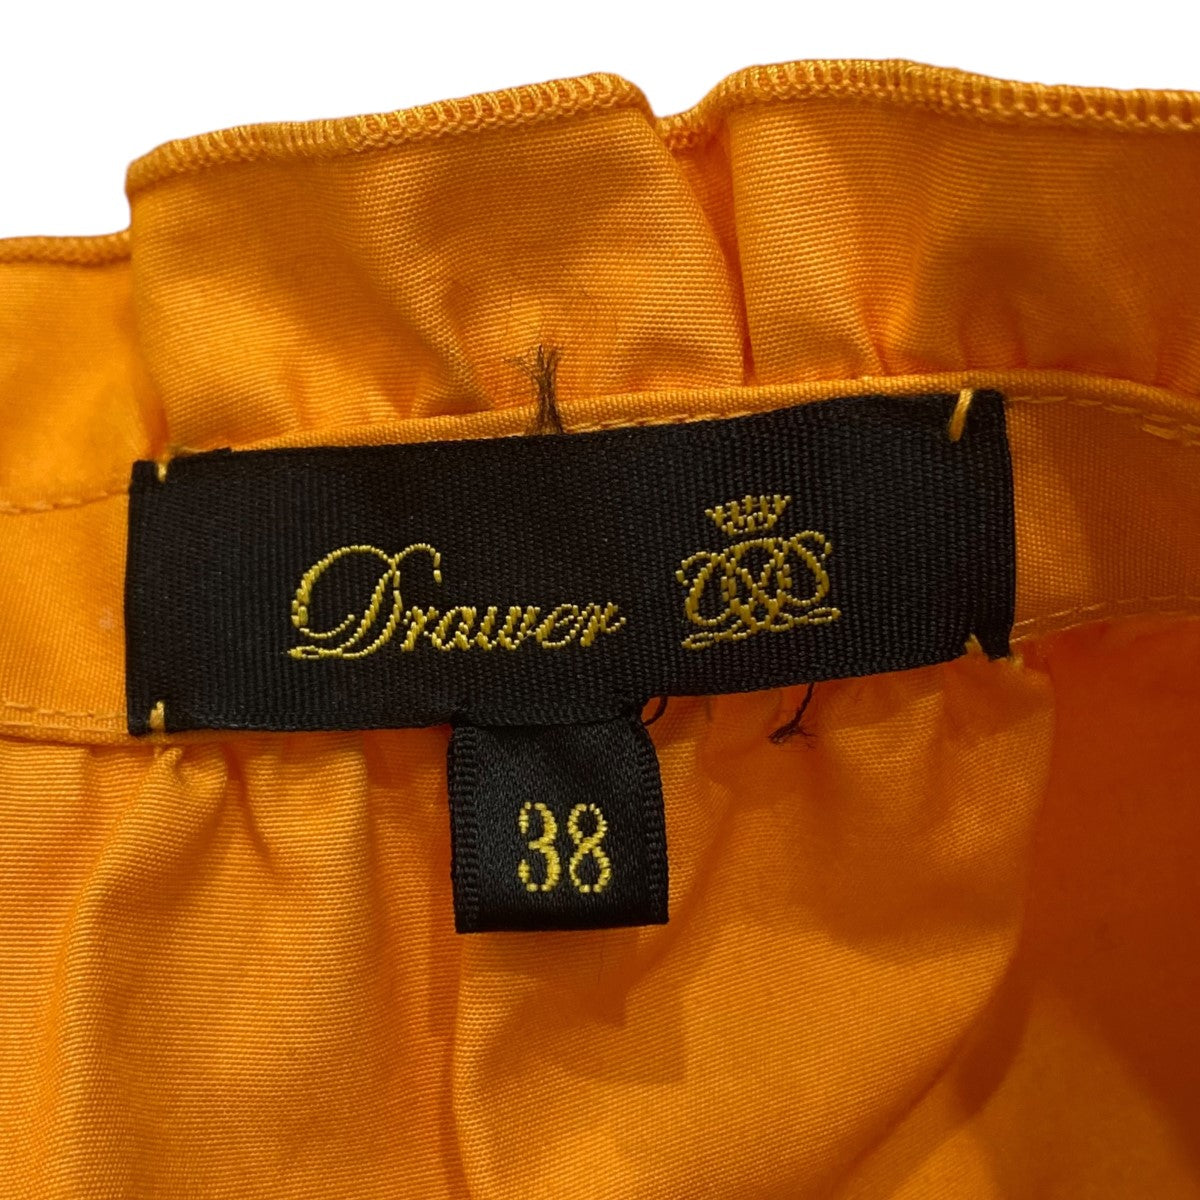 DRAWER(ドゥロワー) ウェストギャザーフレアスカート 6524-299-1044 オレンジ サイズ:38 レディース スカート 中古・古着